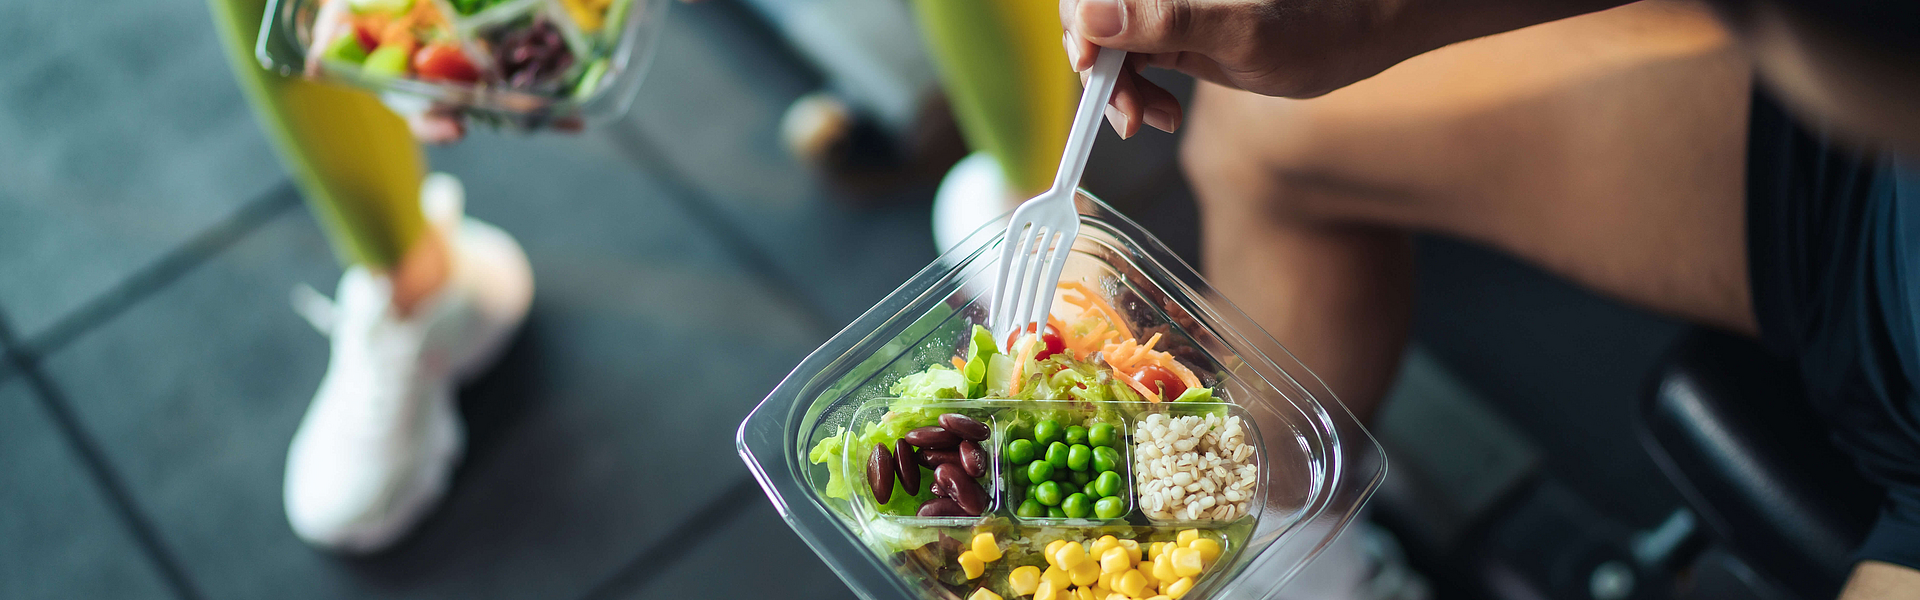 Top-Blick asiatische Mann und Frau gesund essen Salat nach der Übung im Fitnessraum. Zwei Sportler essen zusammen Salat für Gesundheit. Selektiver Fokus auf Salatschüssel zur Verfügung.